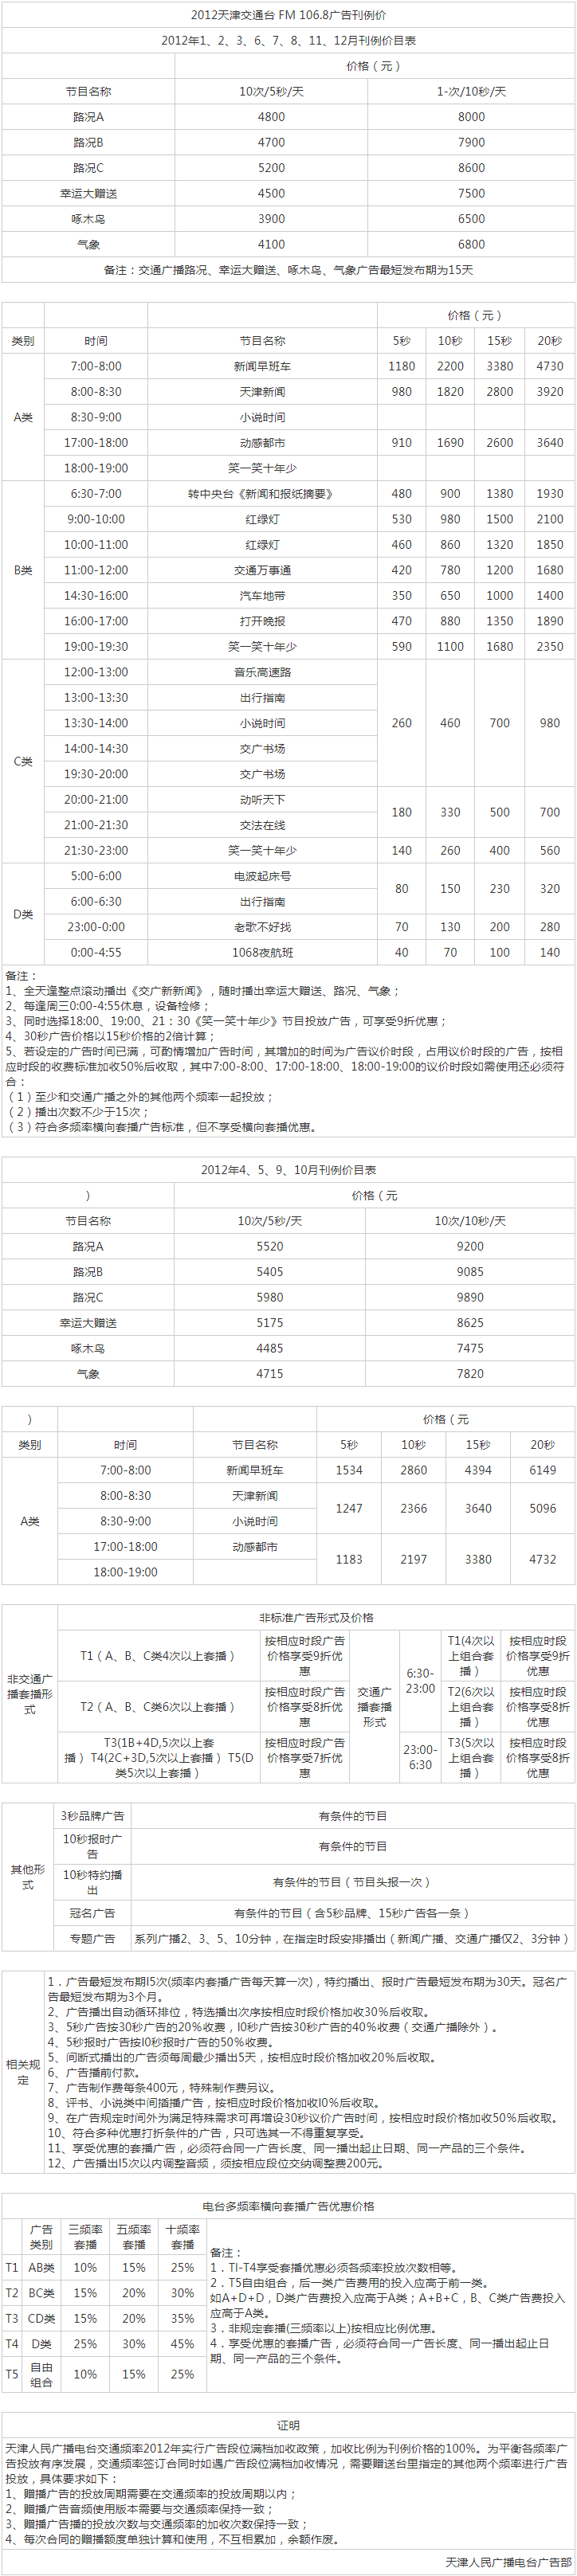 2012天津人民广播电台交通台 FM 106.8广告报价表.png